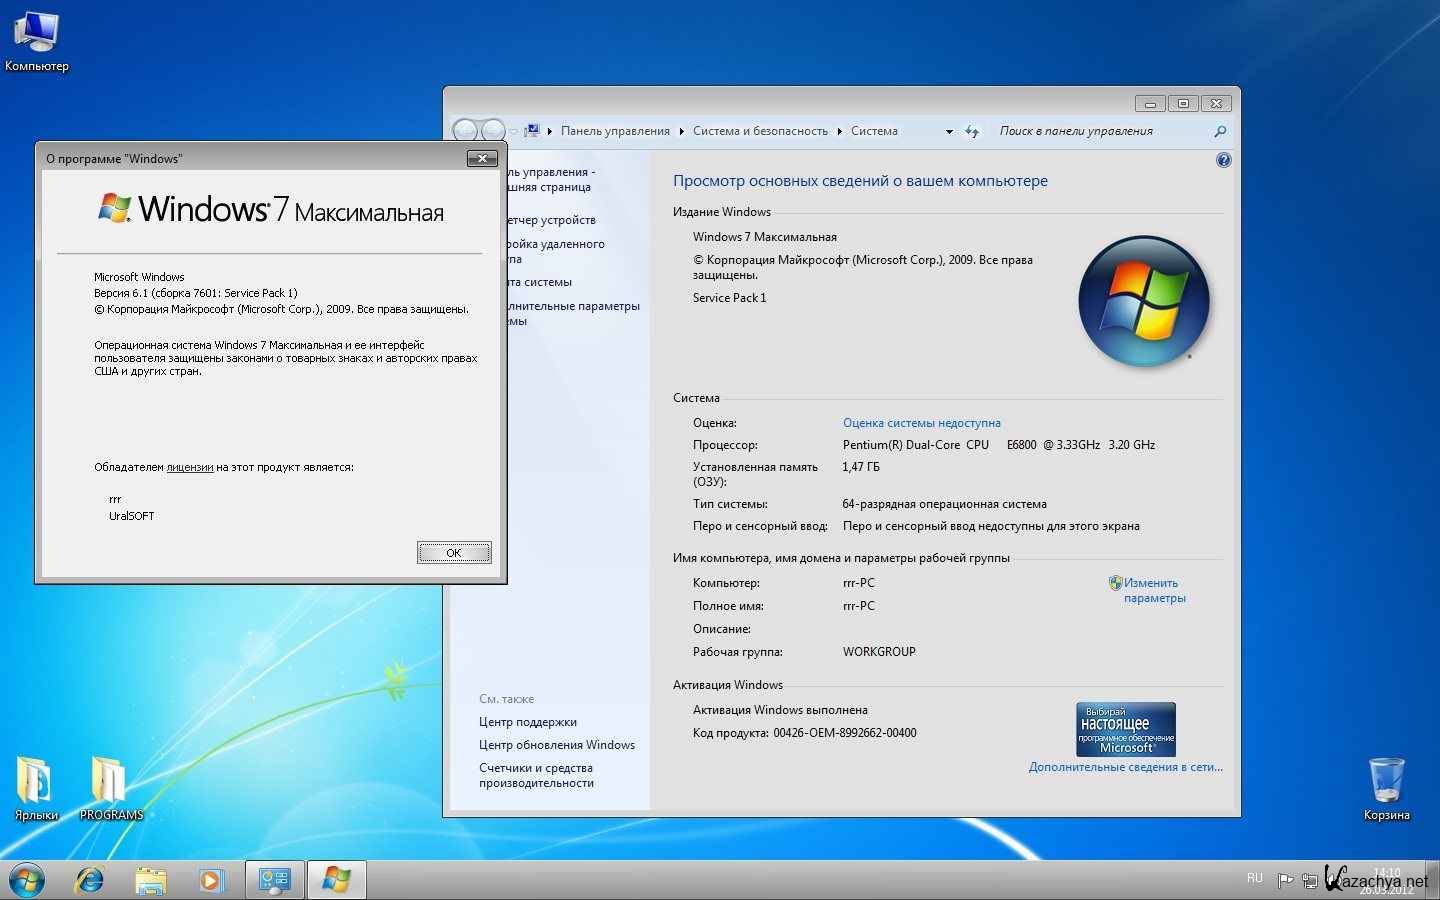 Скачать телеграмм на компьютер бесплатно на русском языке для виндовс 32 бит фото 102